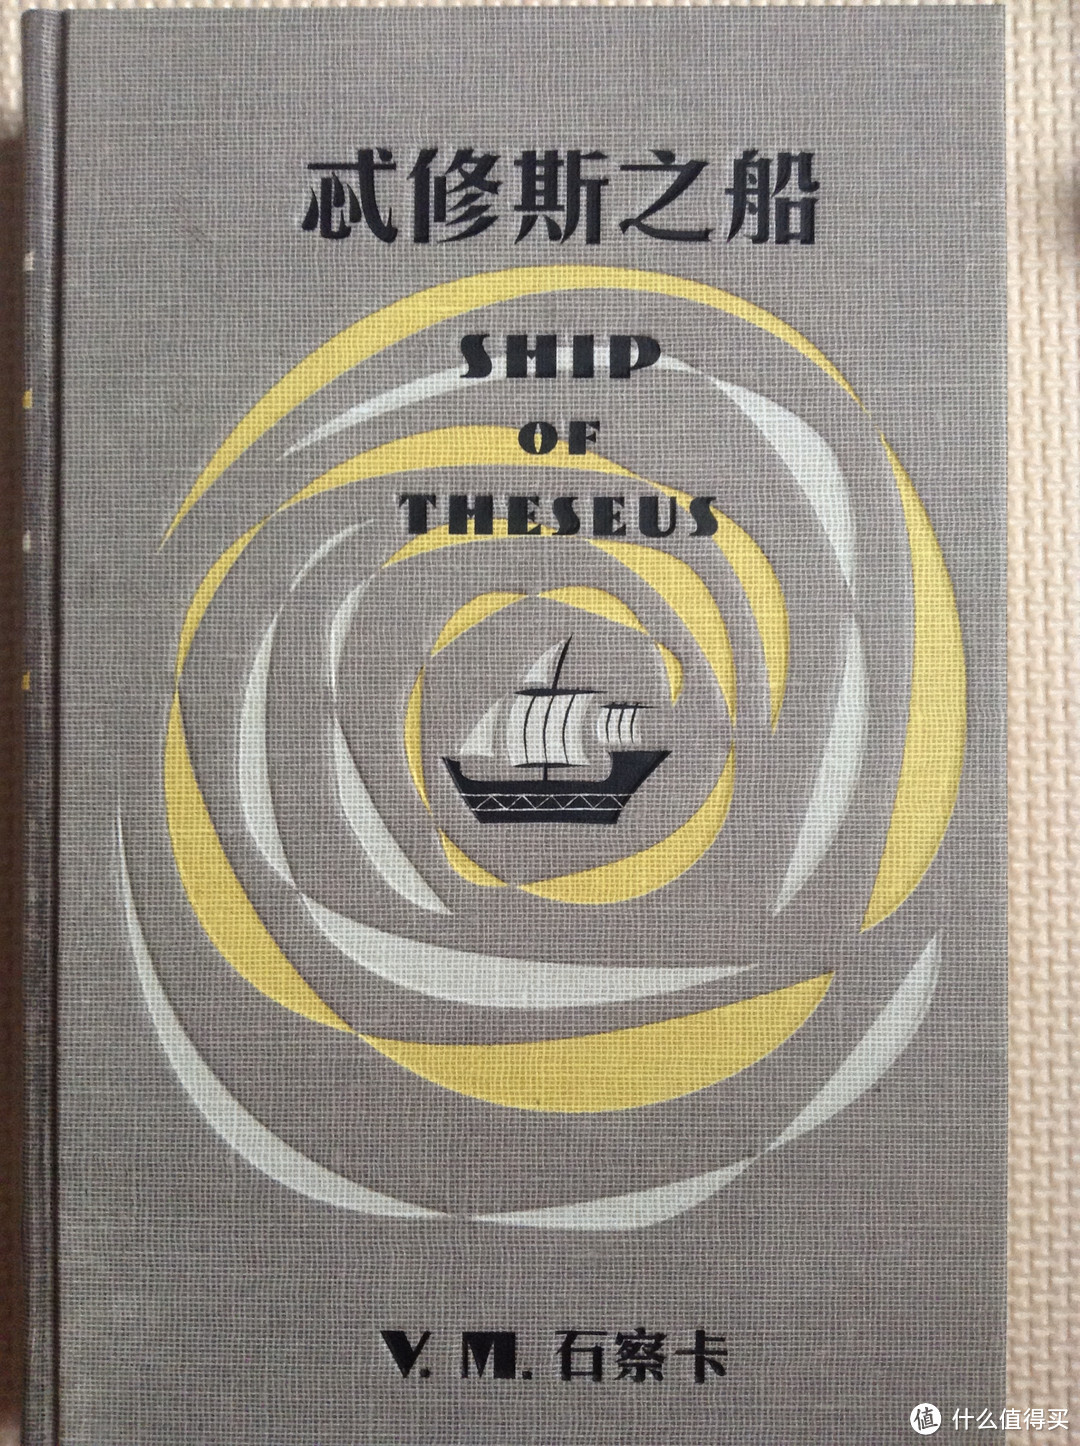 【S. 忒修斯之船】简体中文版简单介绍